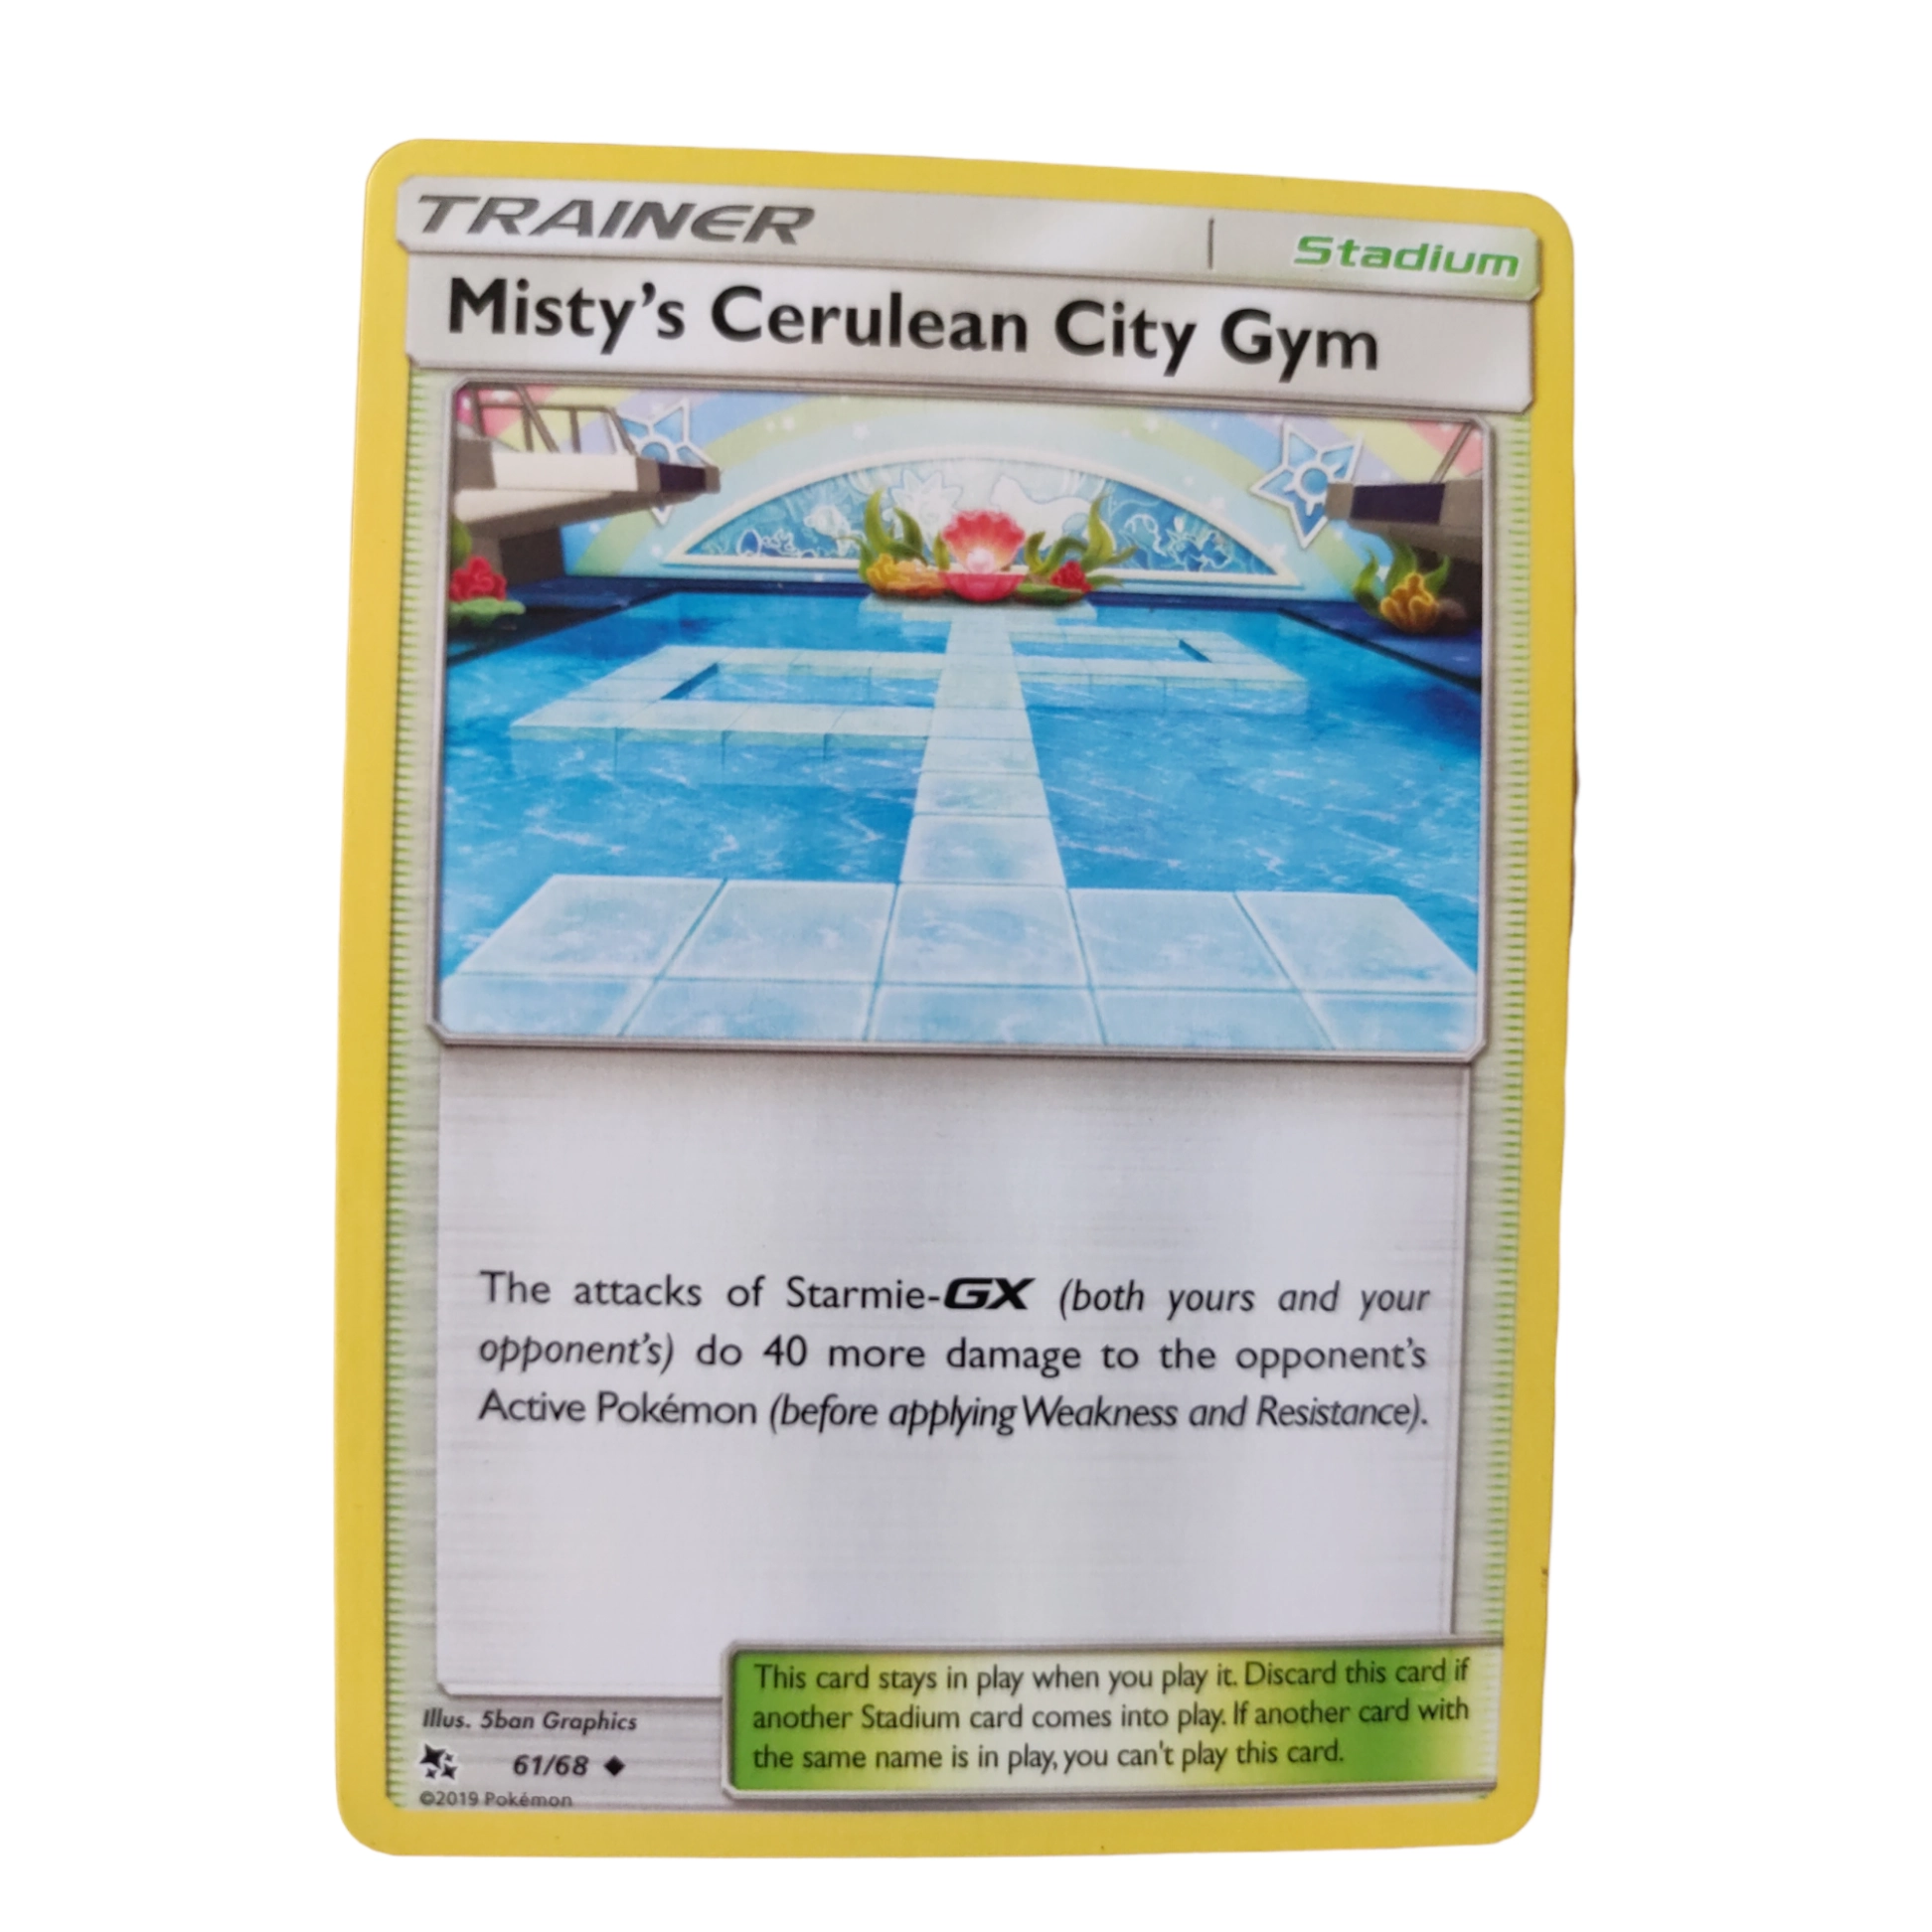 61/68 - Misty's Cerulean City Gym